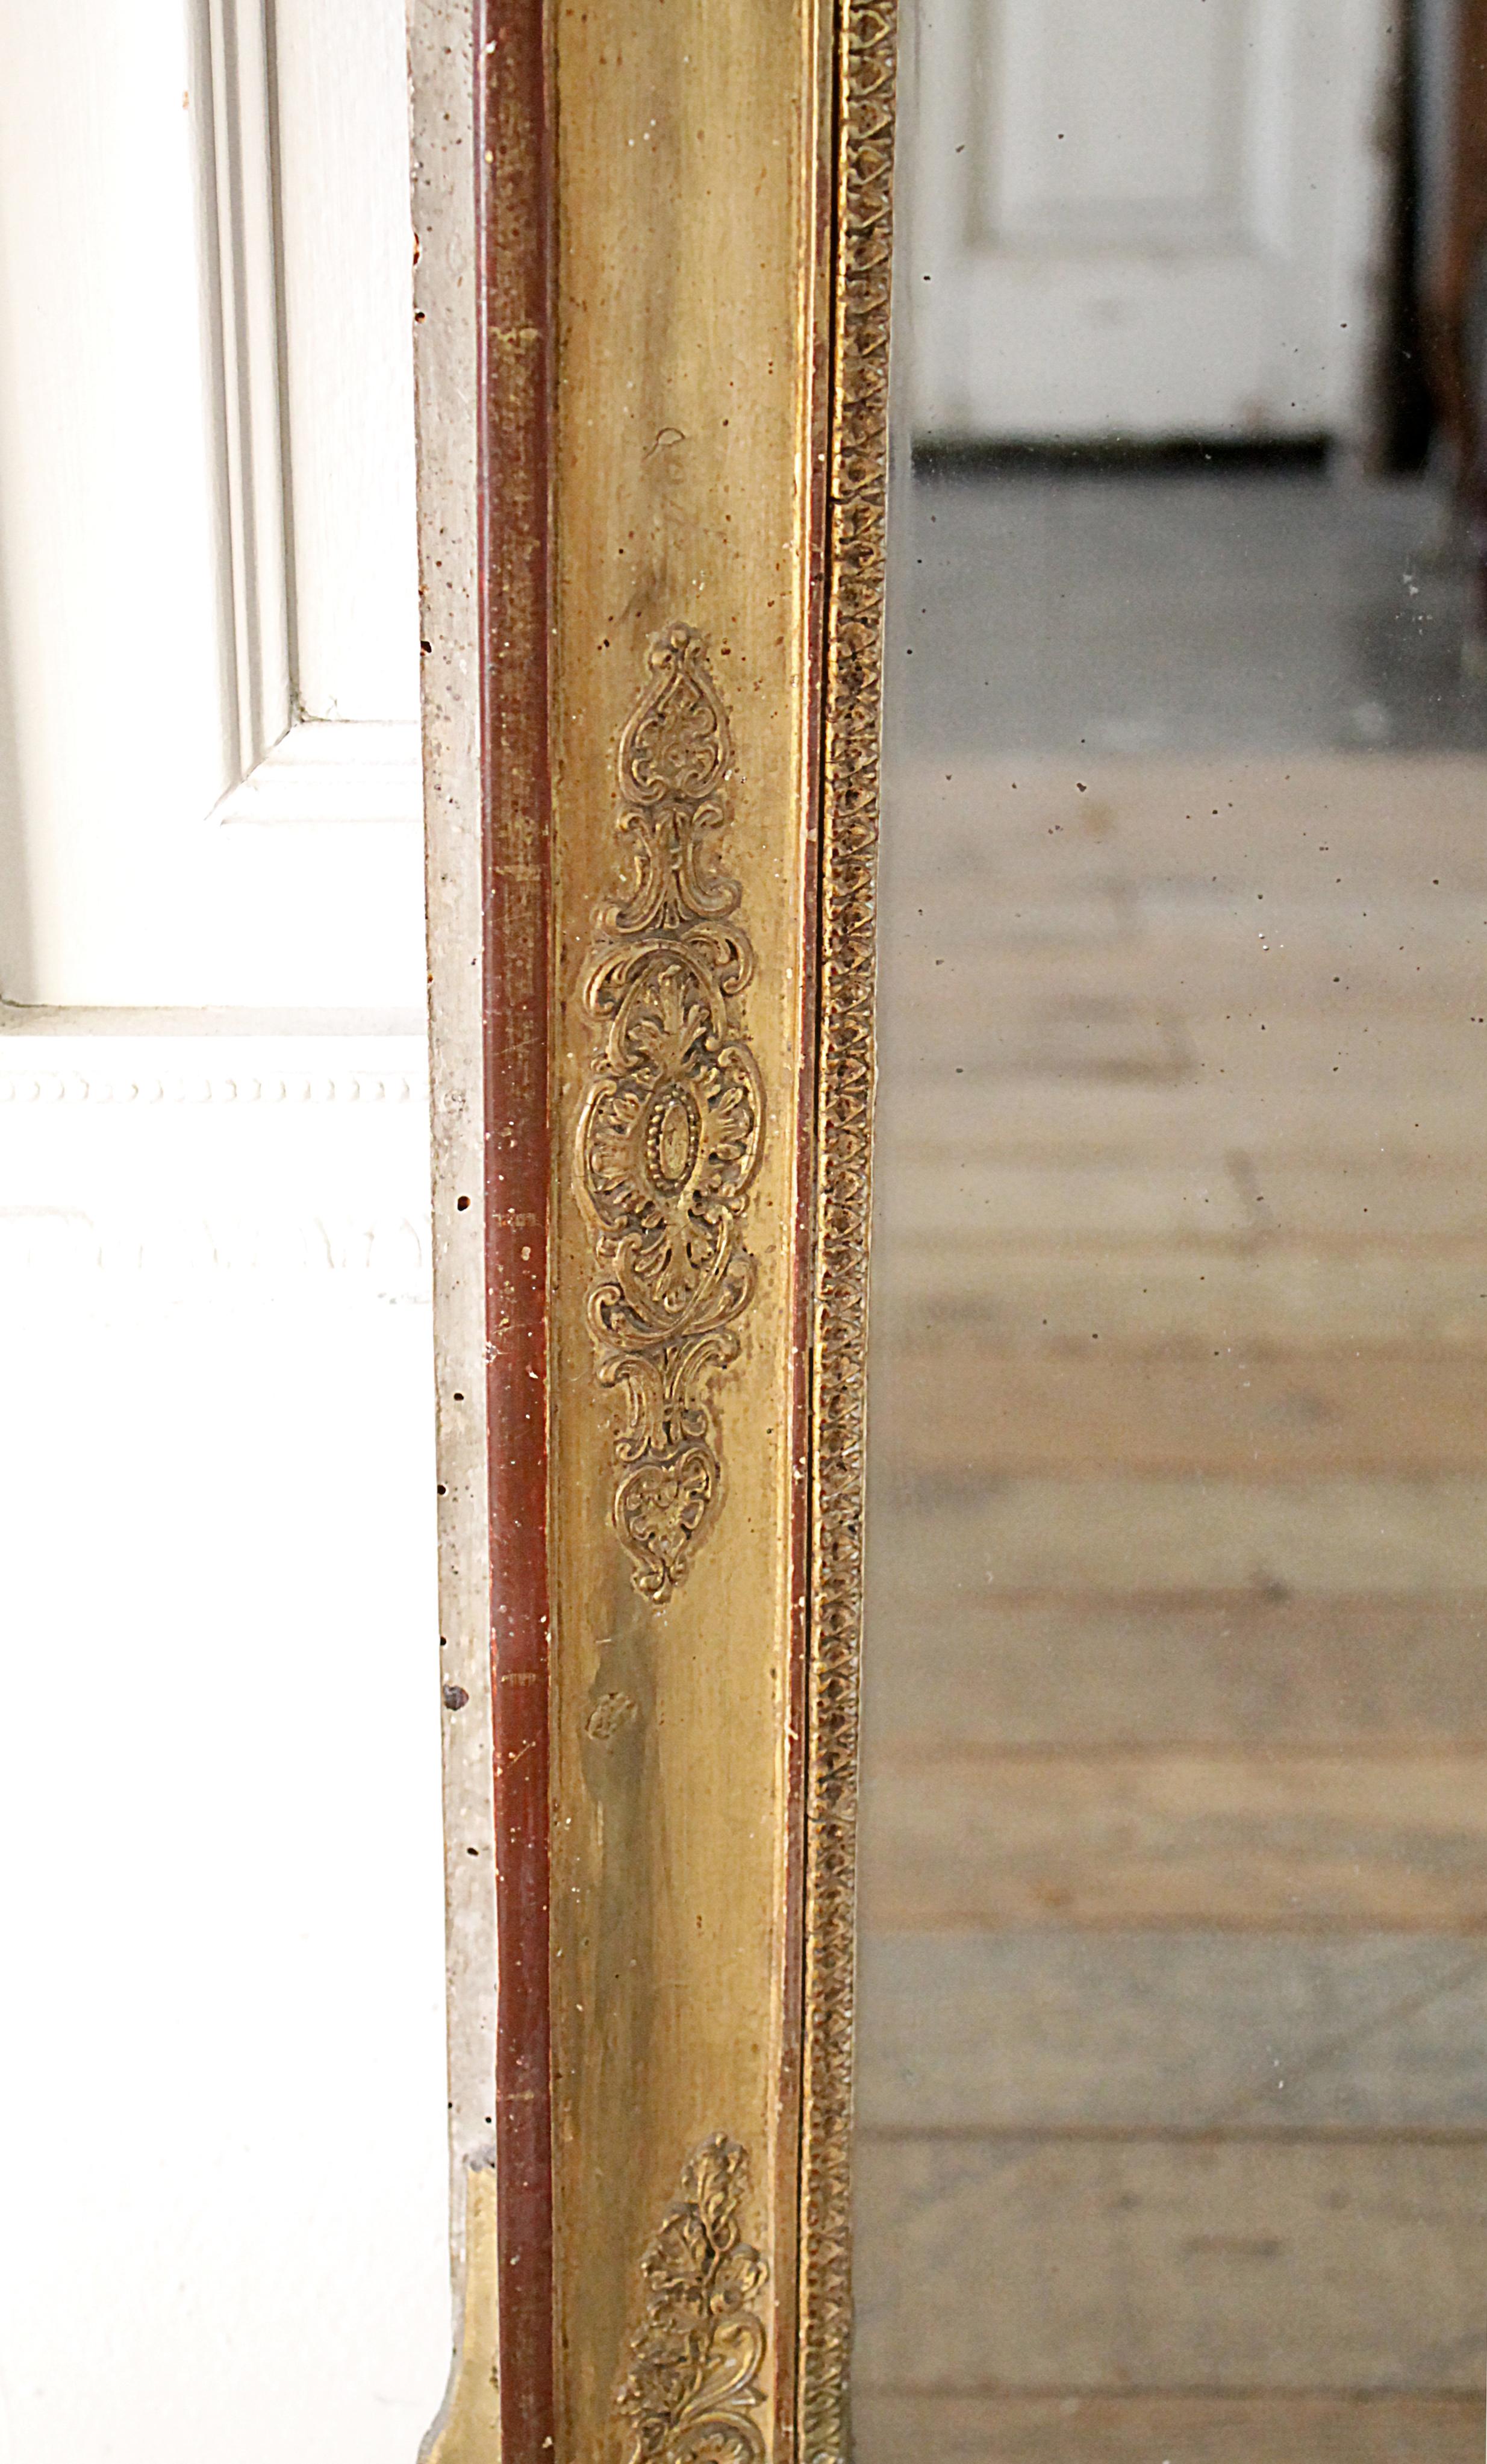 19th Century Antique Louis XVI Style Giltwood Mirror